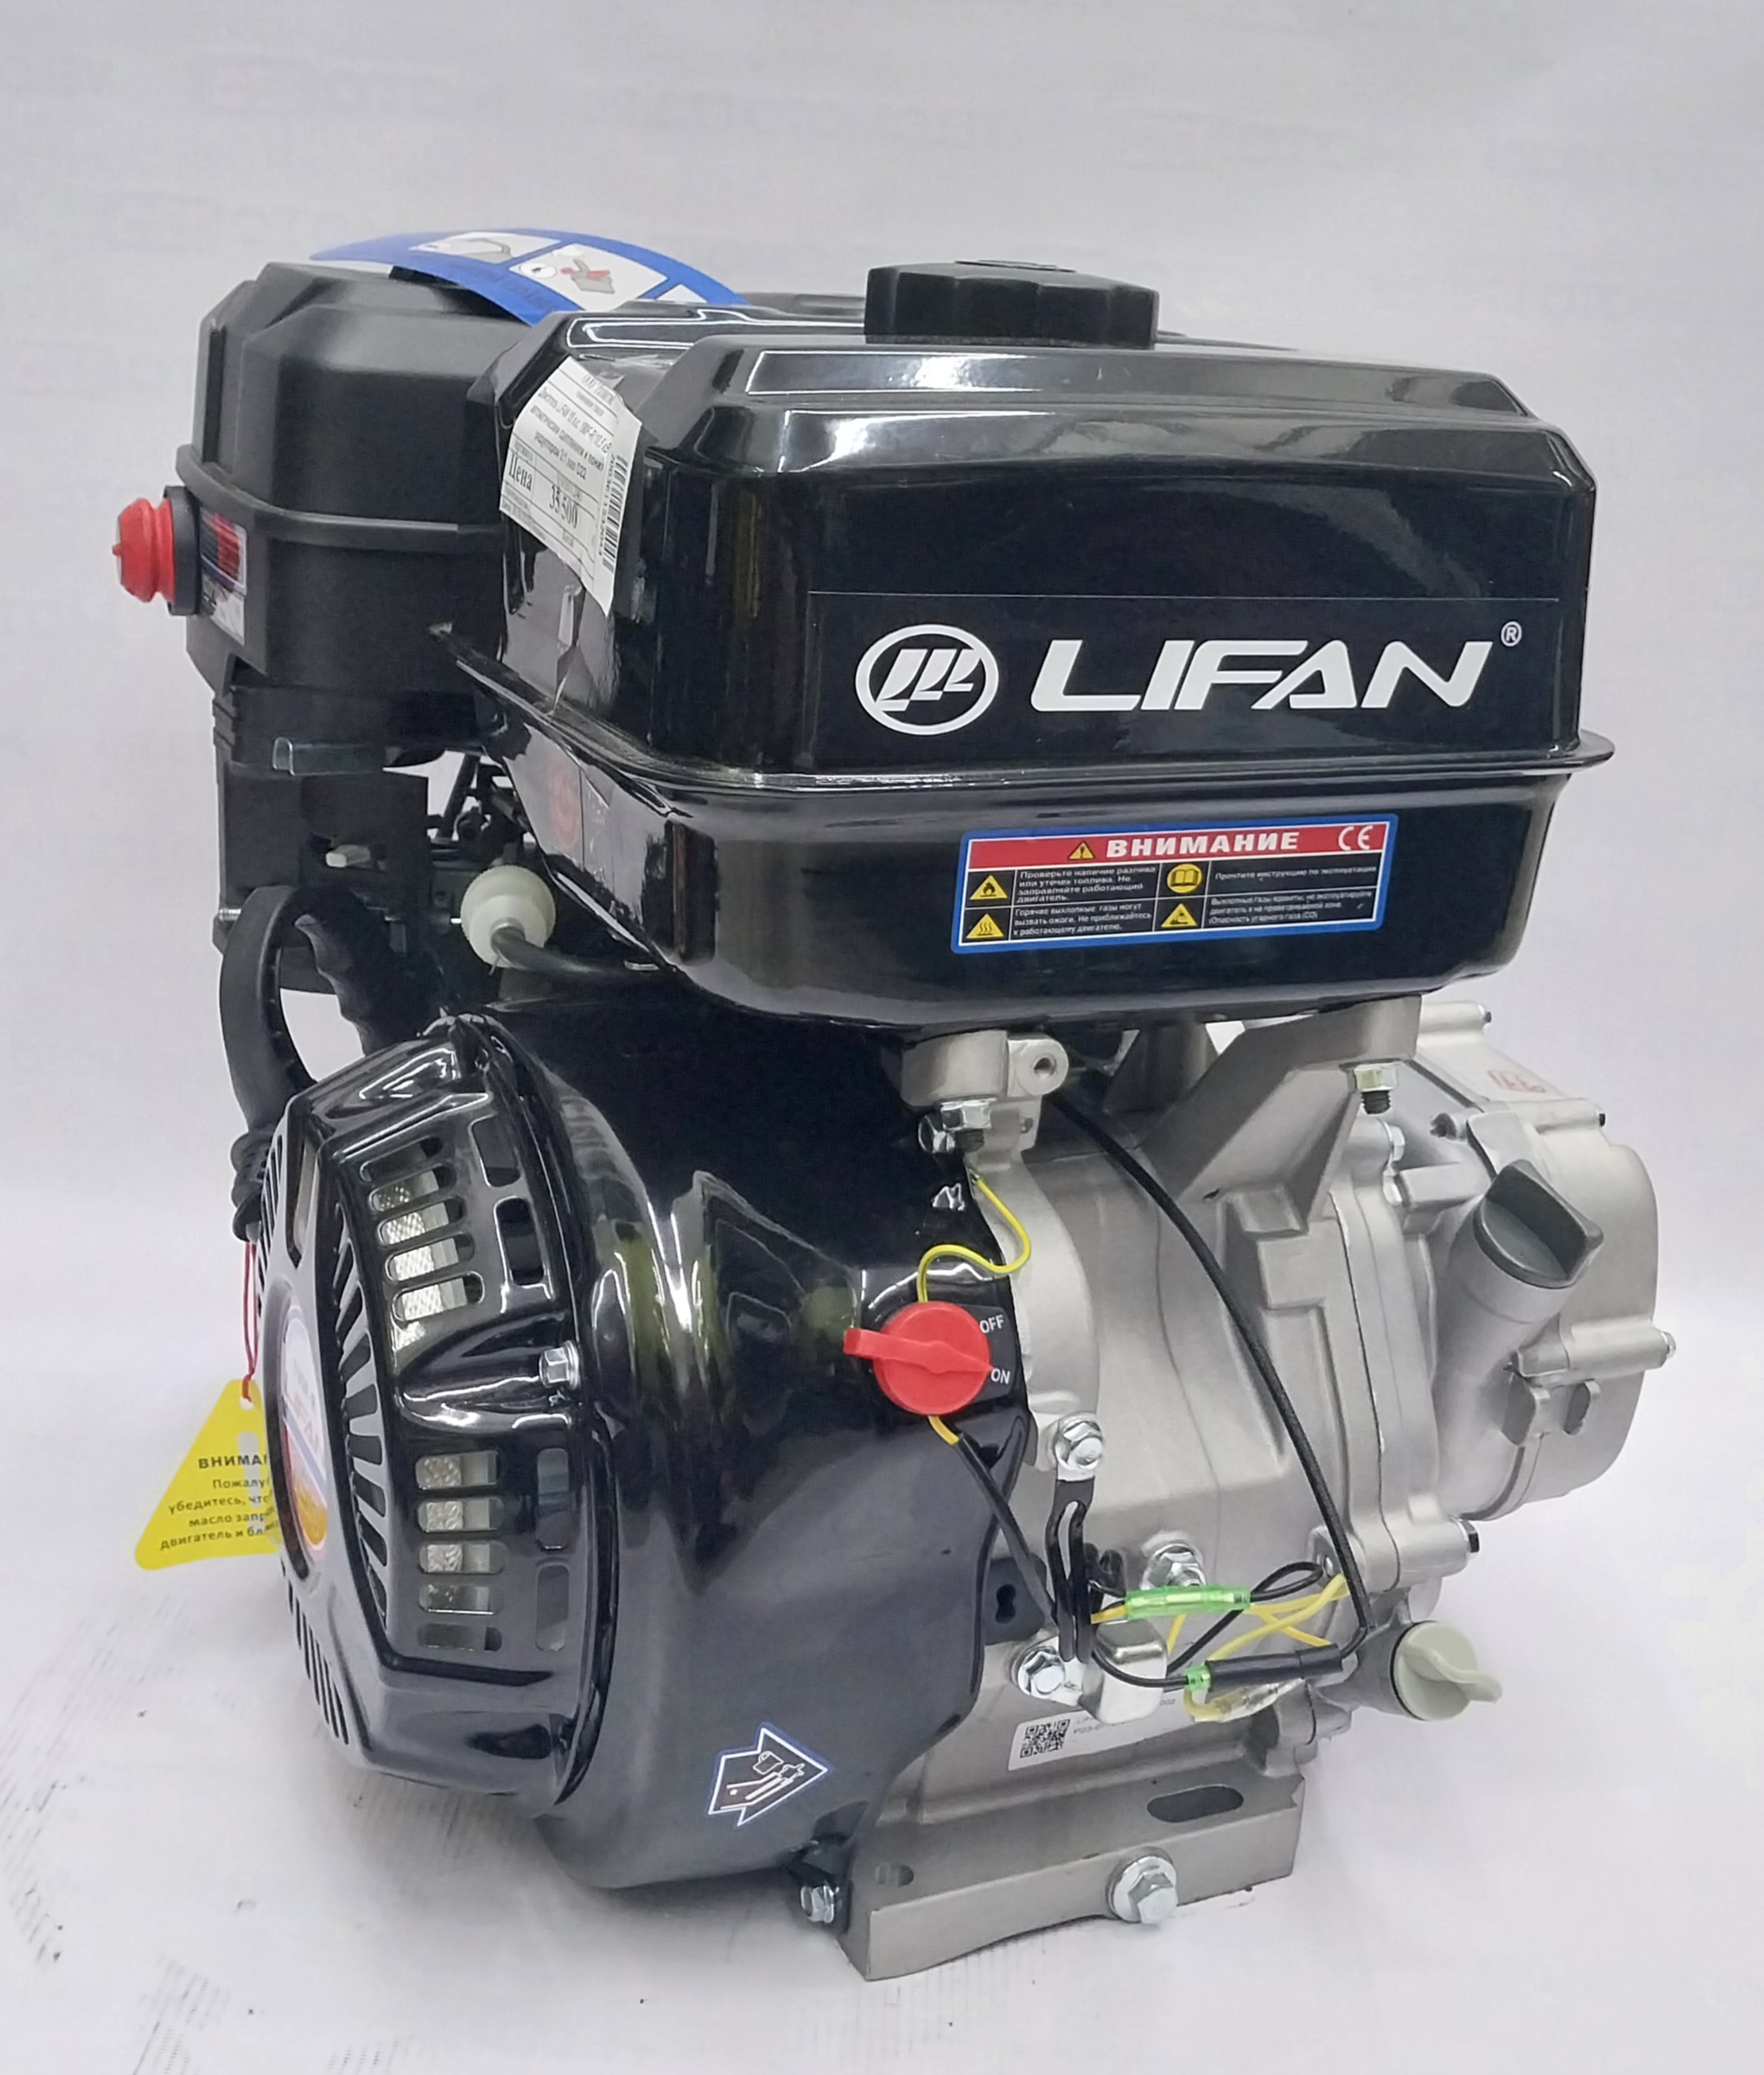 Двигатель LIFAN 15 л.с. 190F-R(10,5 кВт)с автоматическим сцеплением и пониж. редуктором 2:1,вал D22